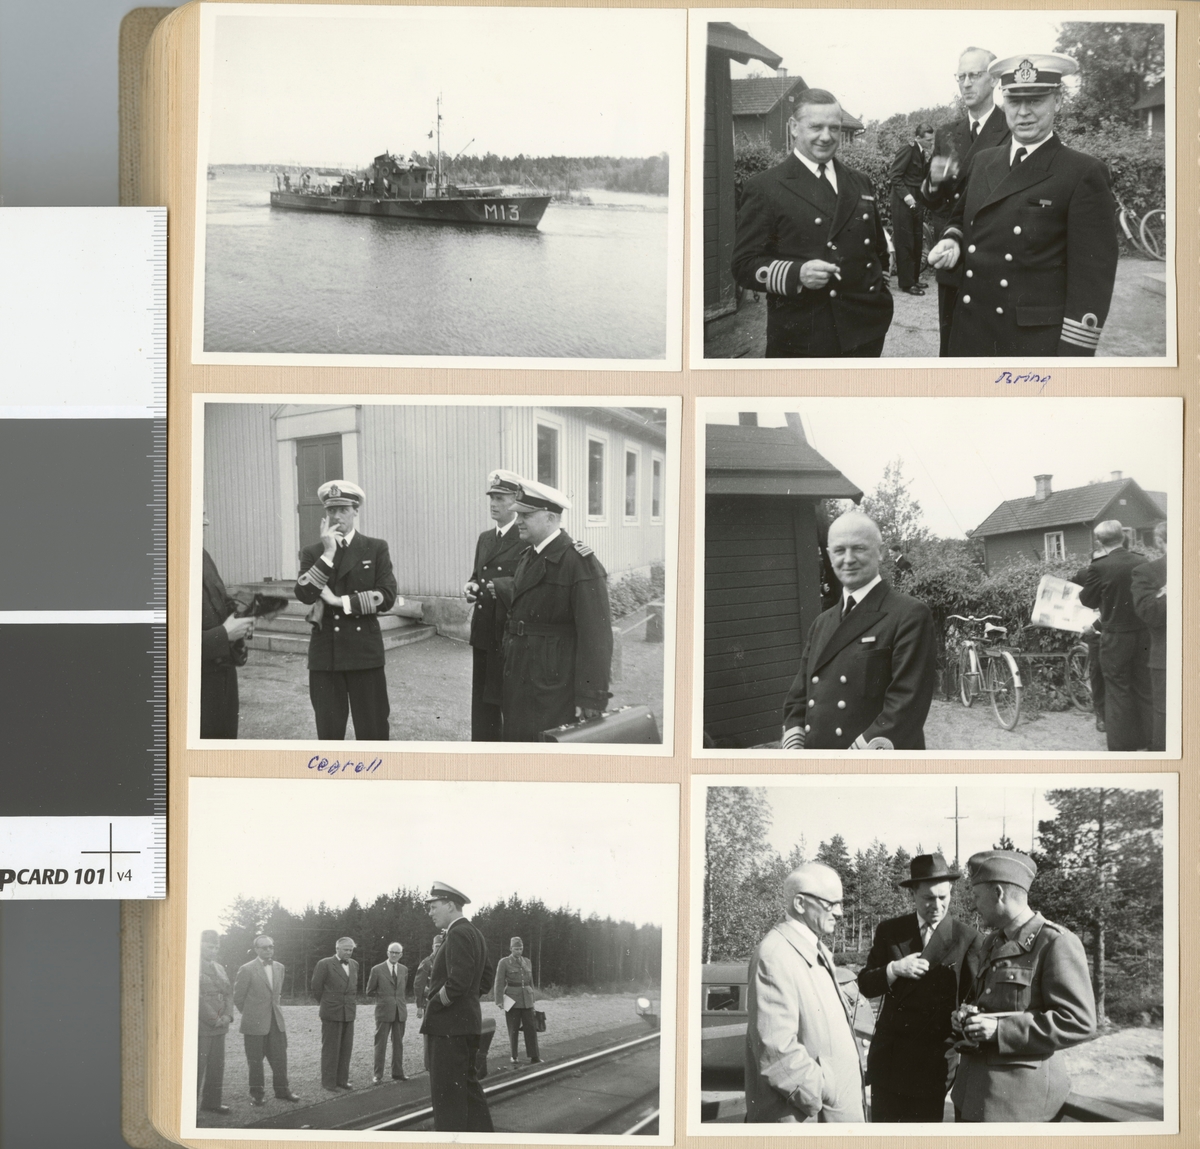 Text i fotoalbum: "FHS på marinfältövning 1956". Män vid järnväg.